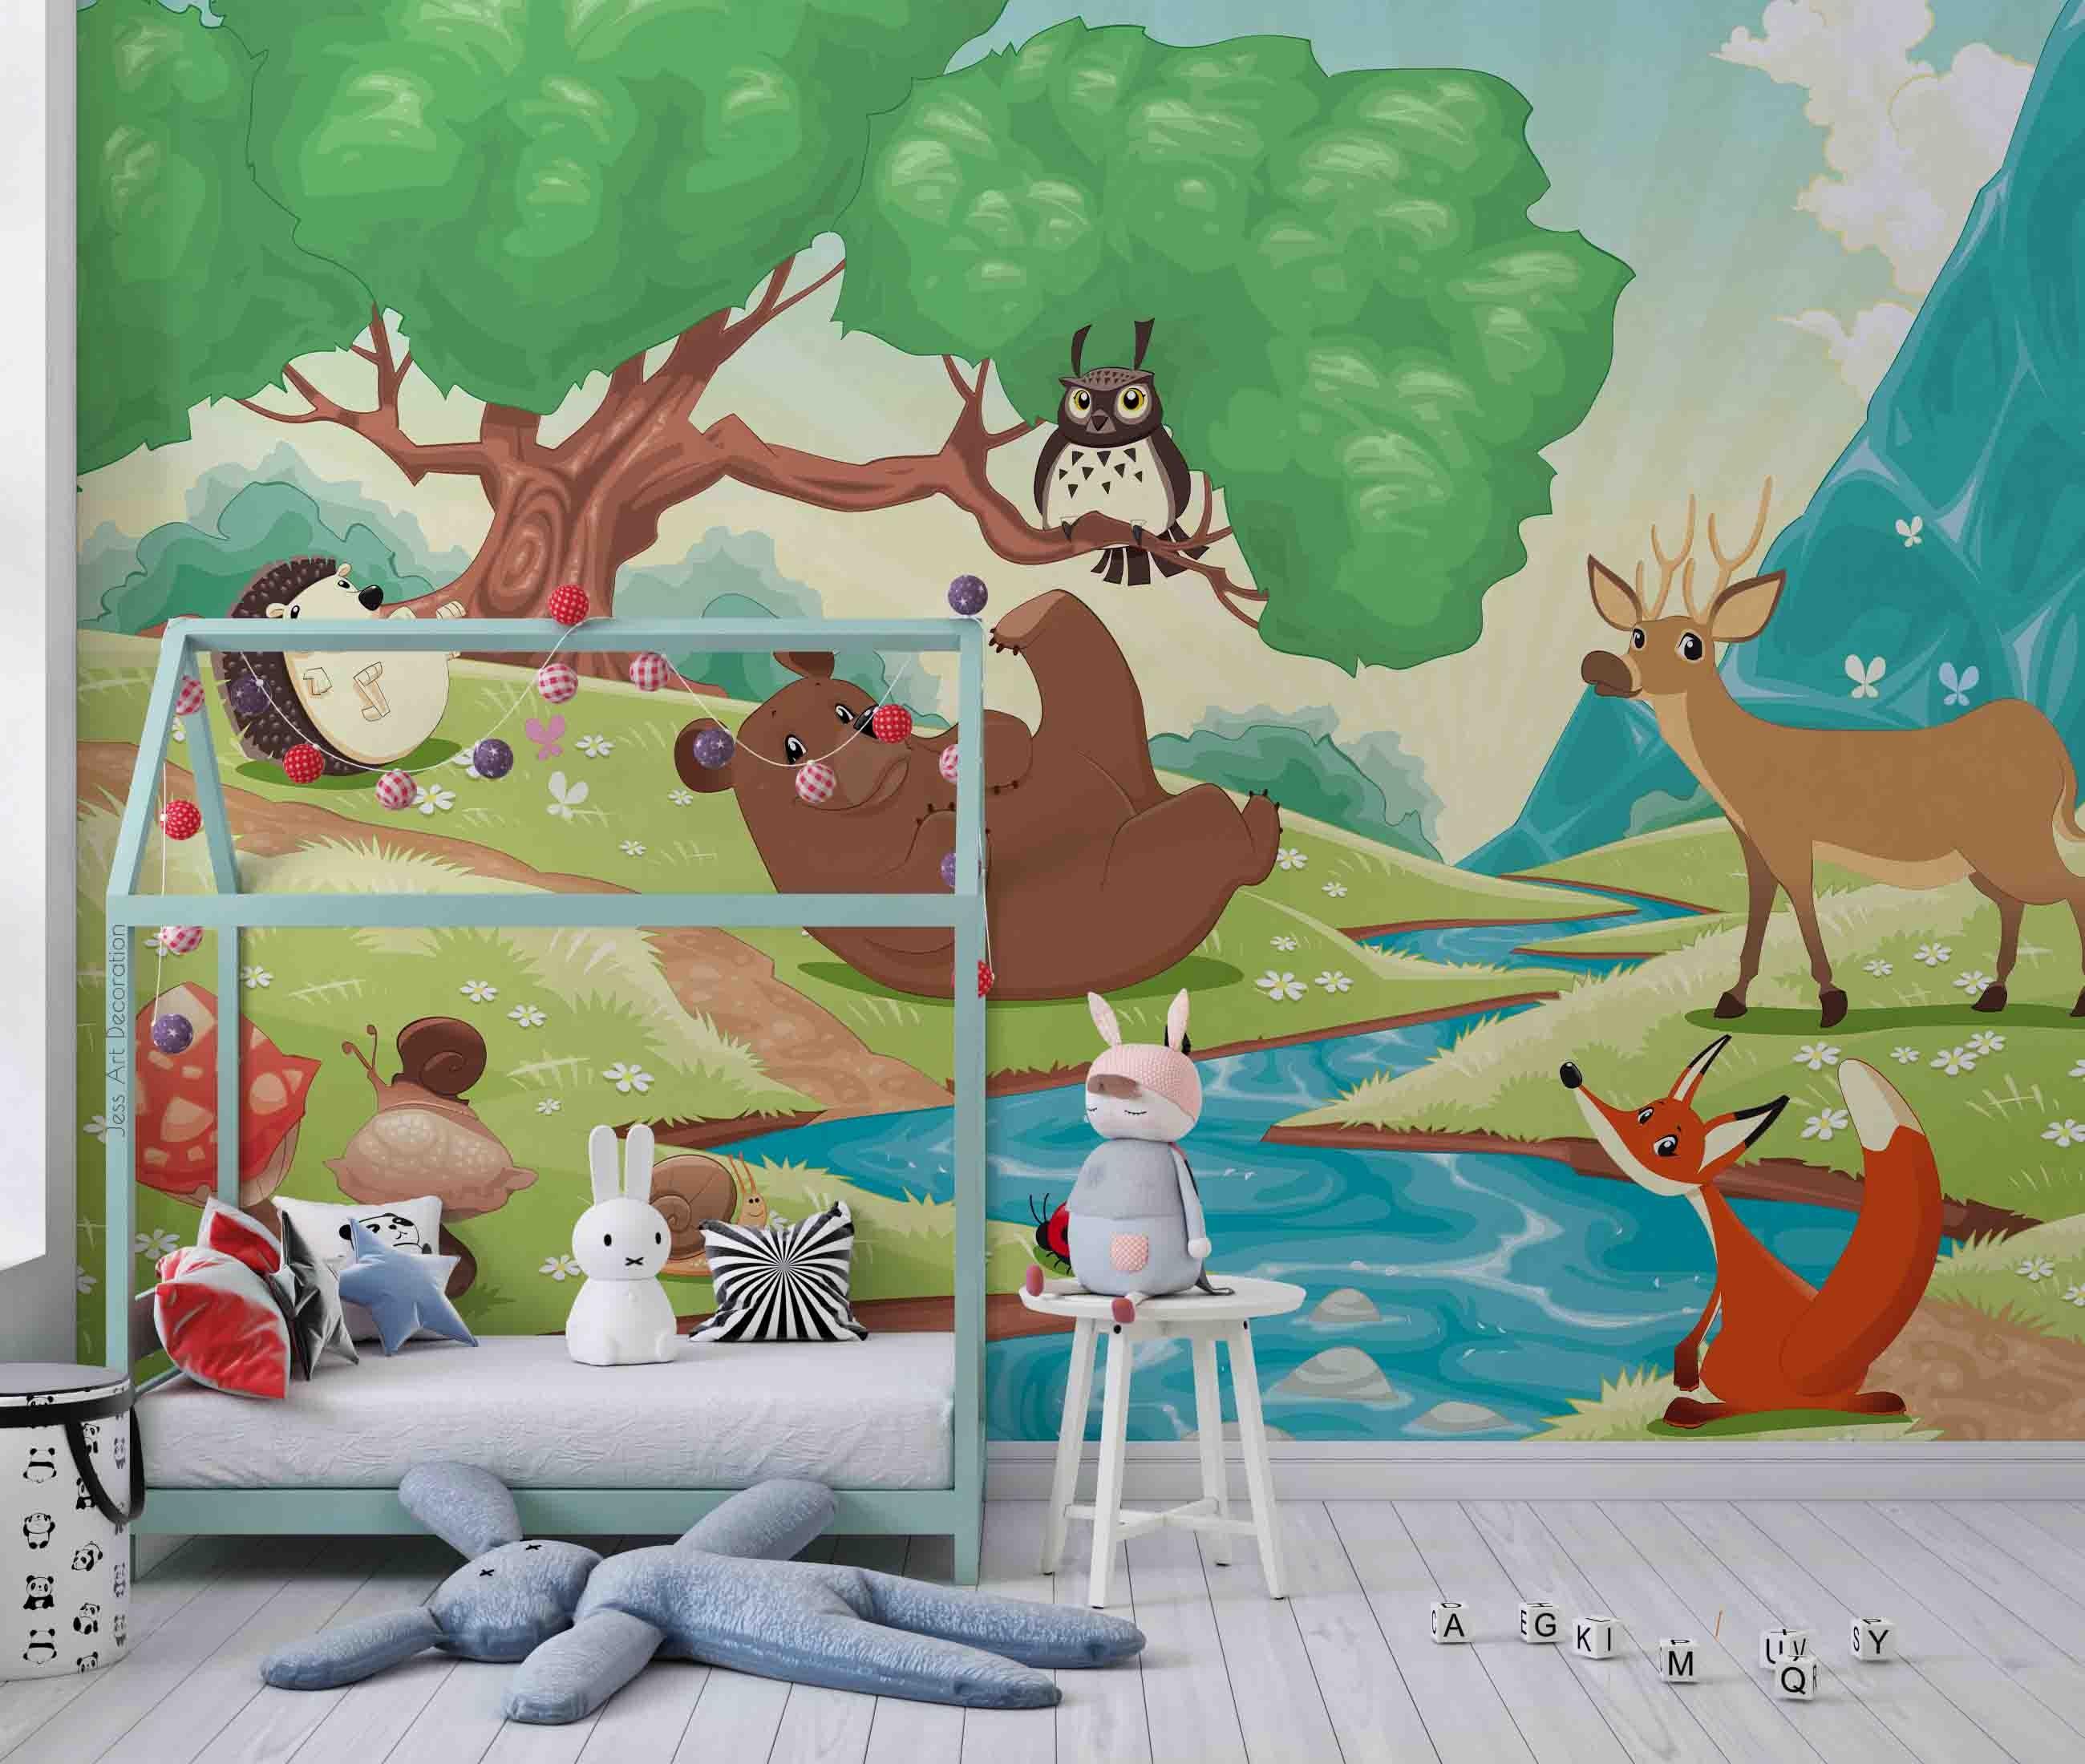 3D Cartoon Forest Animal River Wall Mural Wallpaper GD 2505- Jess Art Decoration